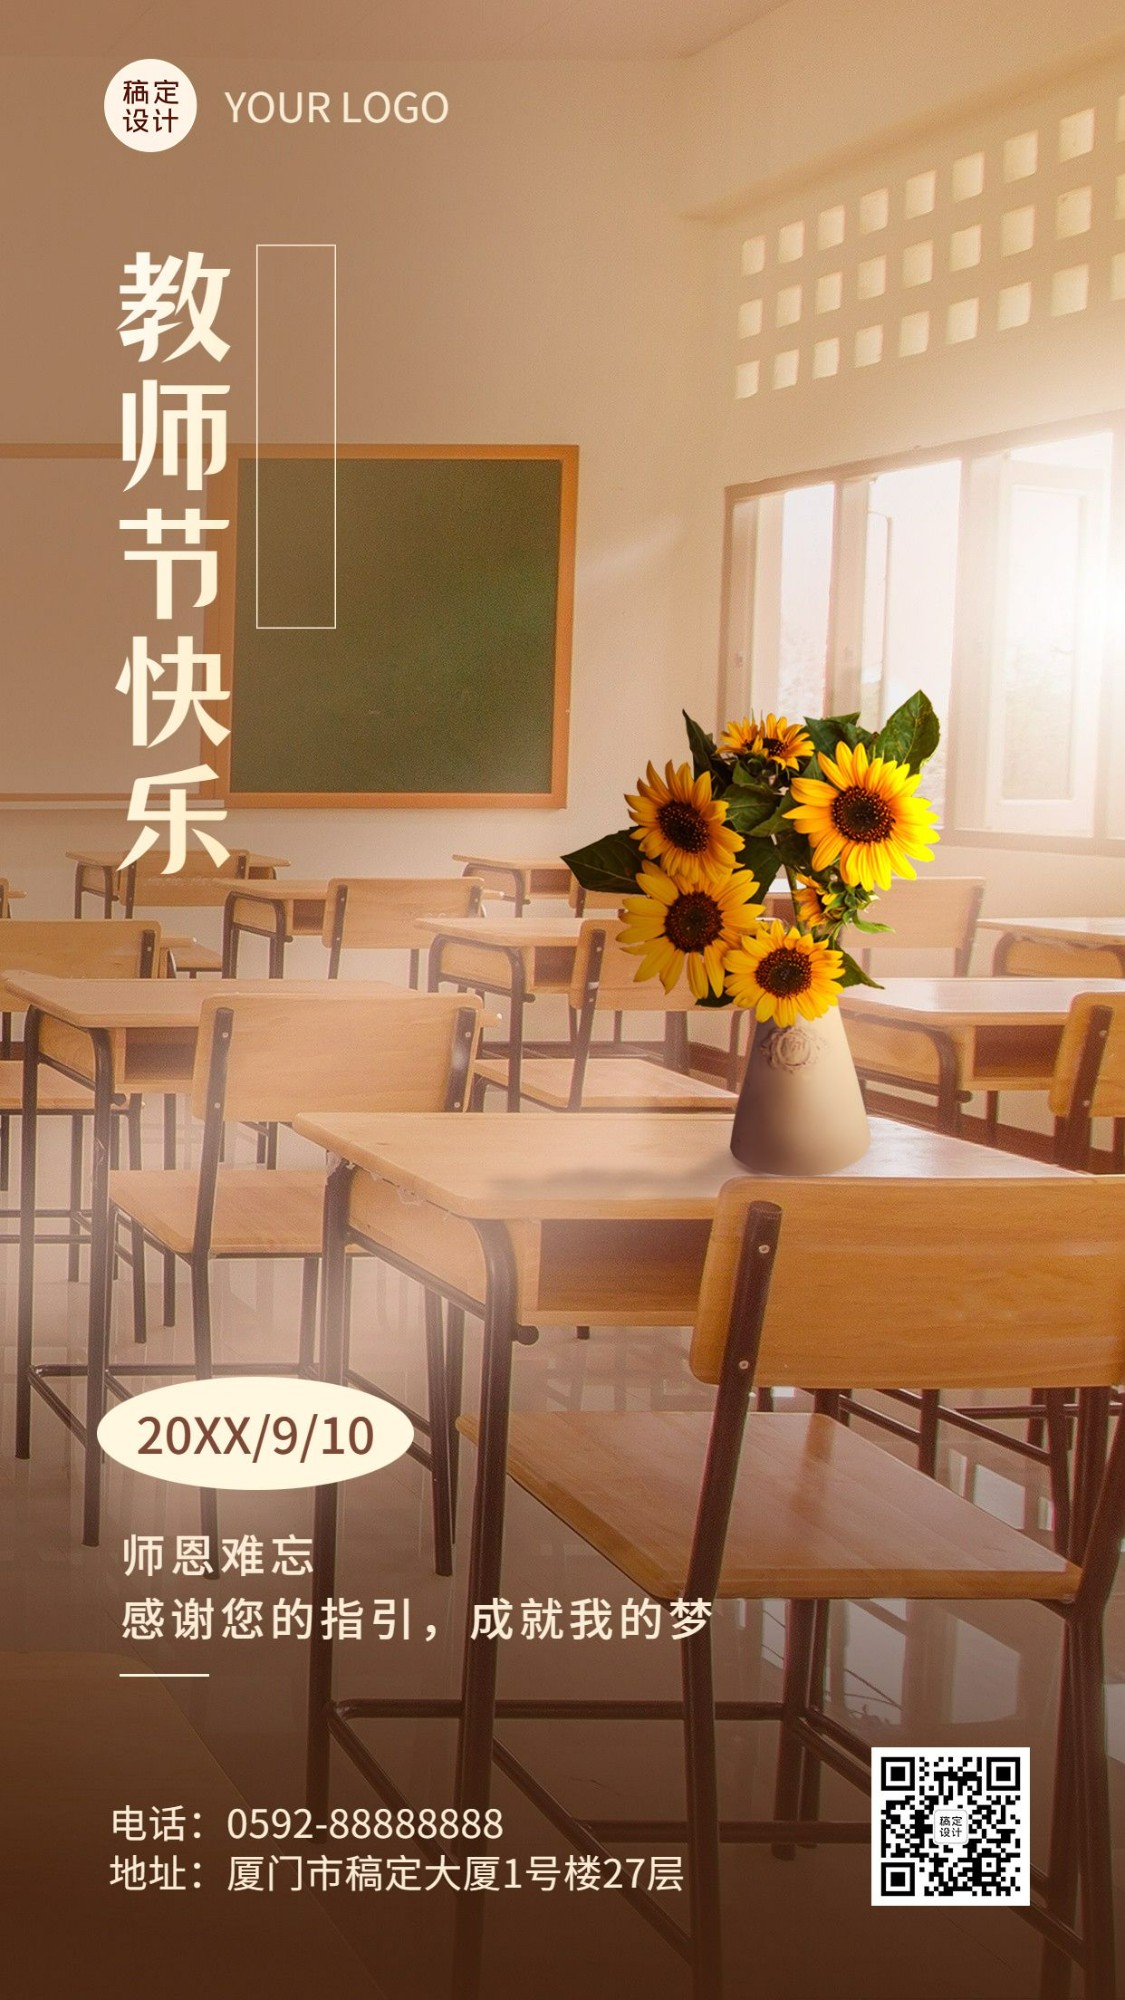 教师节节日祝福实景排版手机海报